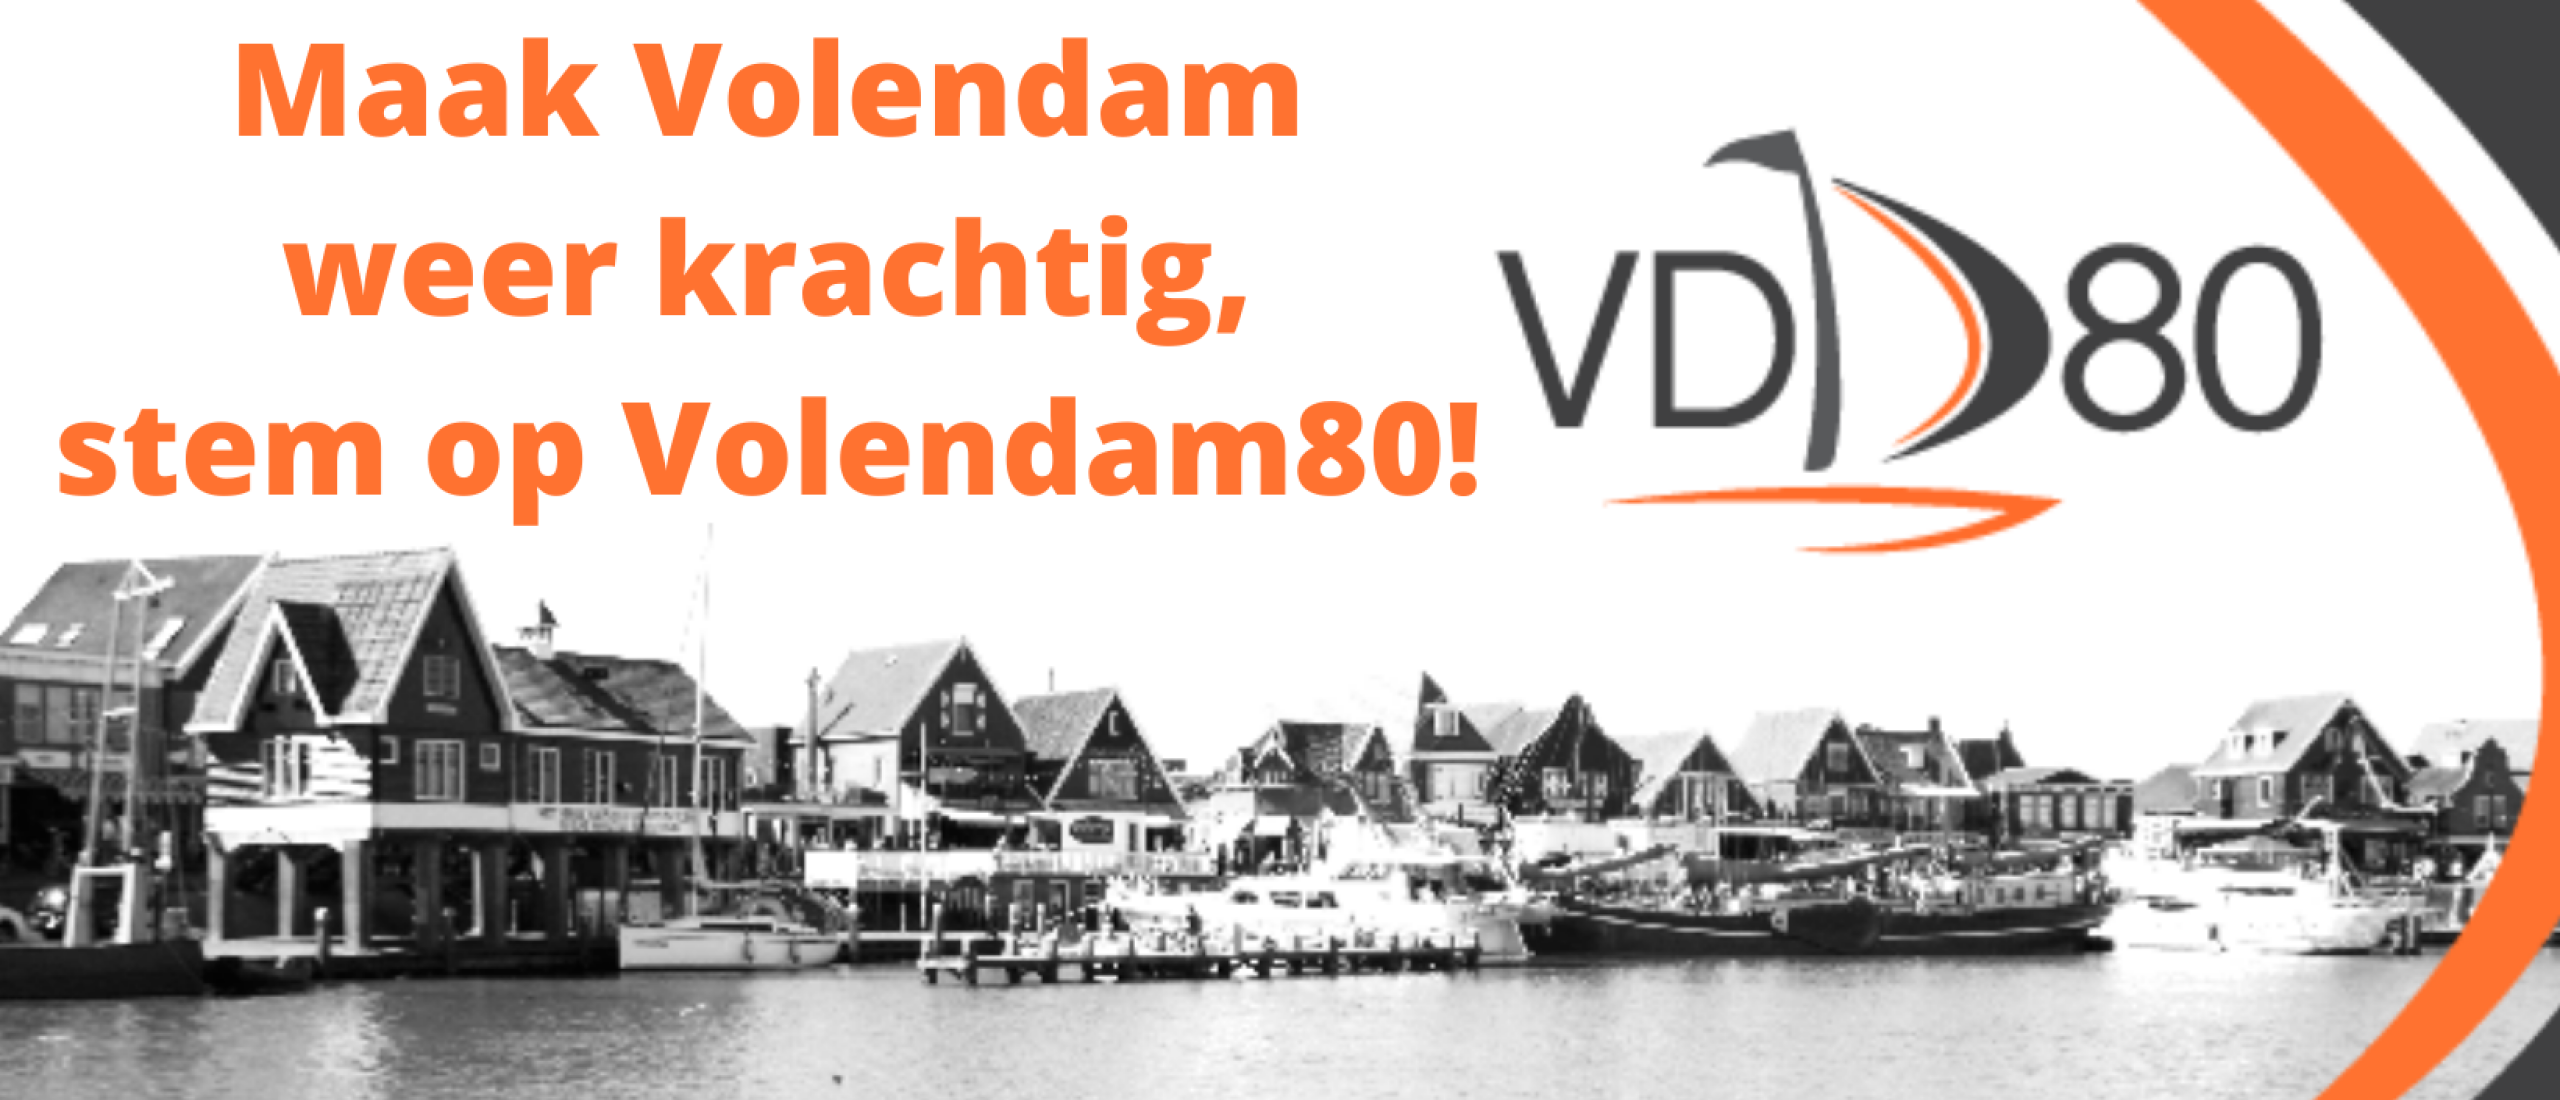 Maak Volendam weer krachtig met Volendam|80!